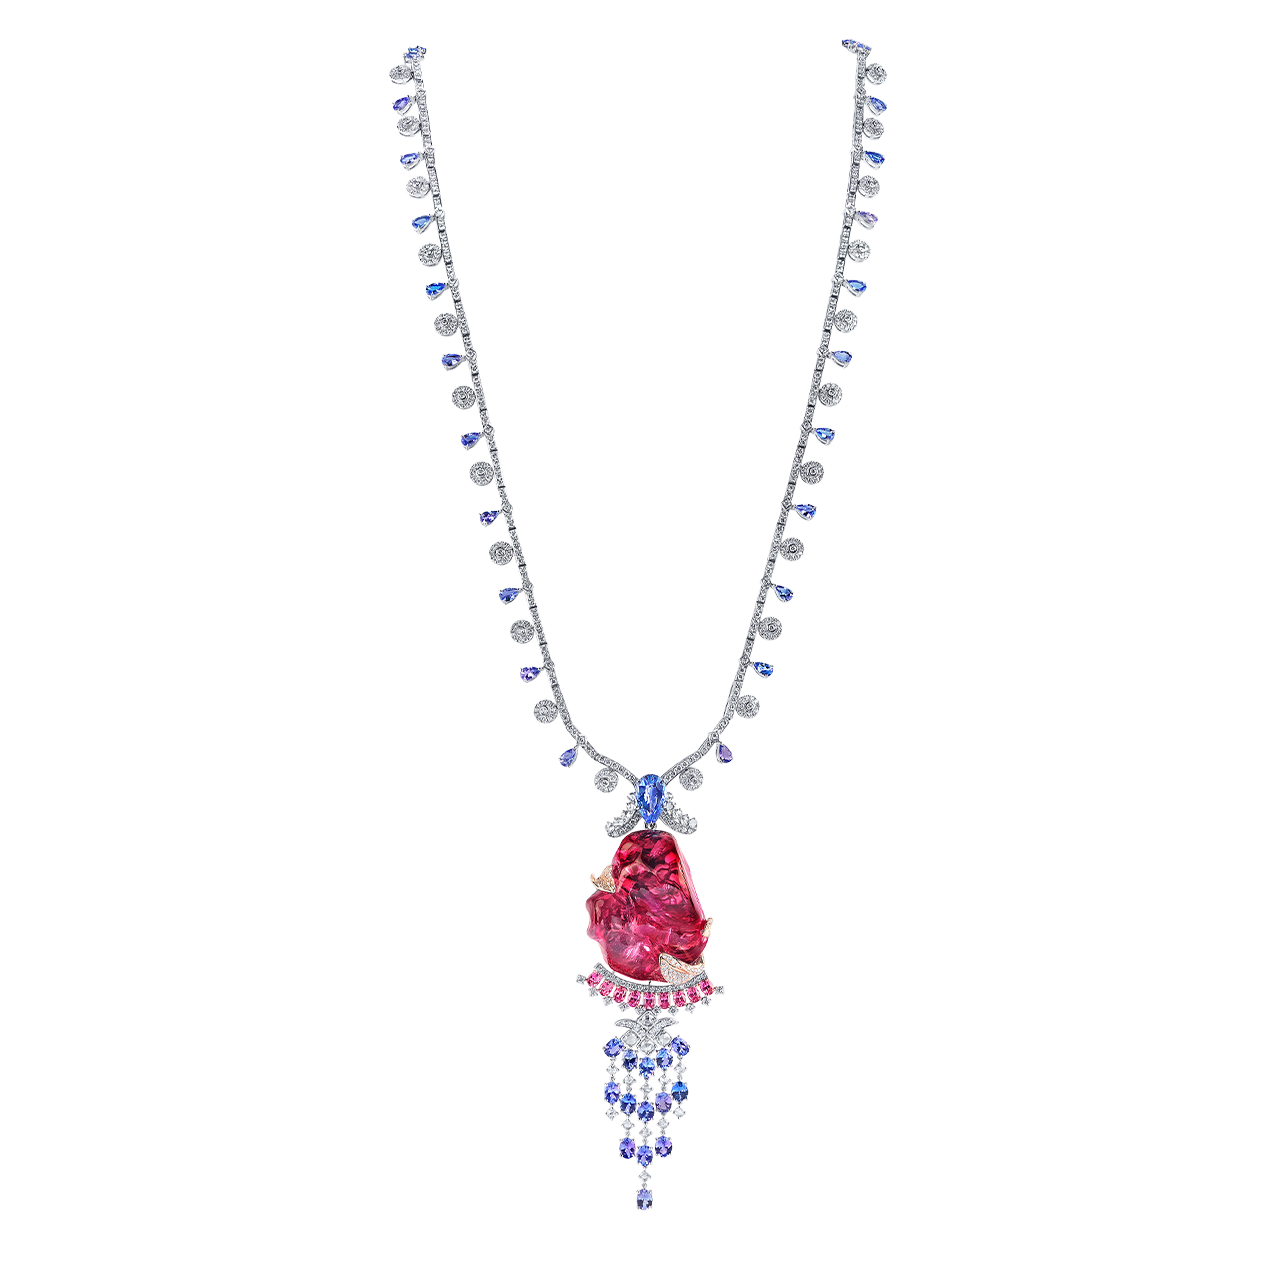 156克拉 世界寶藏 塔吉克斯坦尖晶石套鍊
Tajikistan Spinel Pendant Necklace